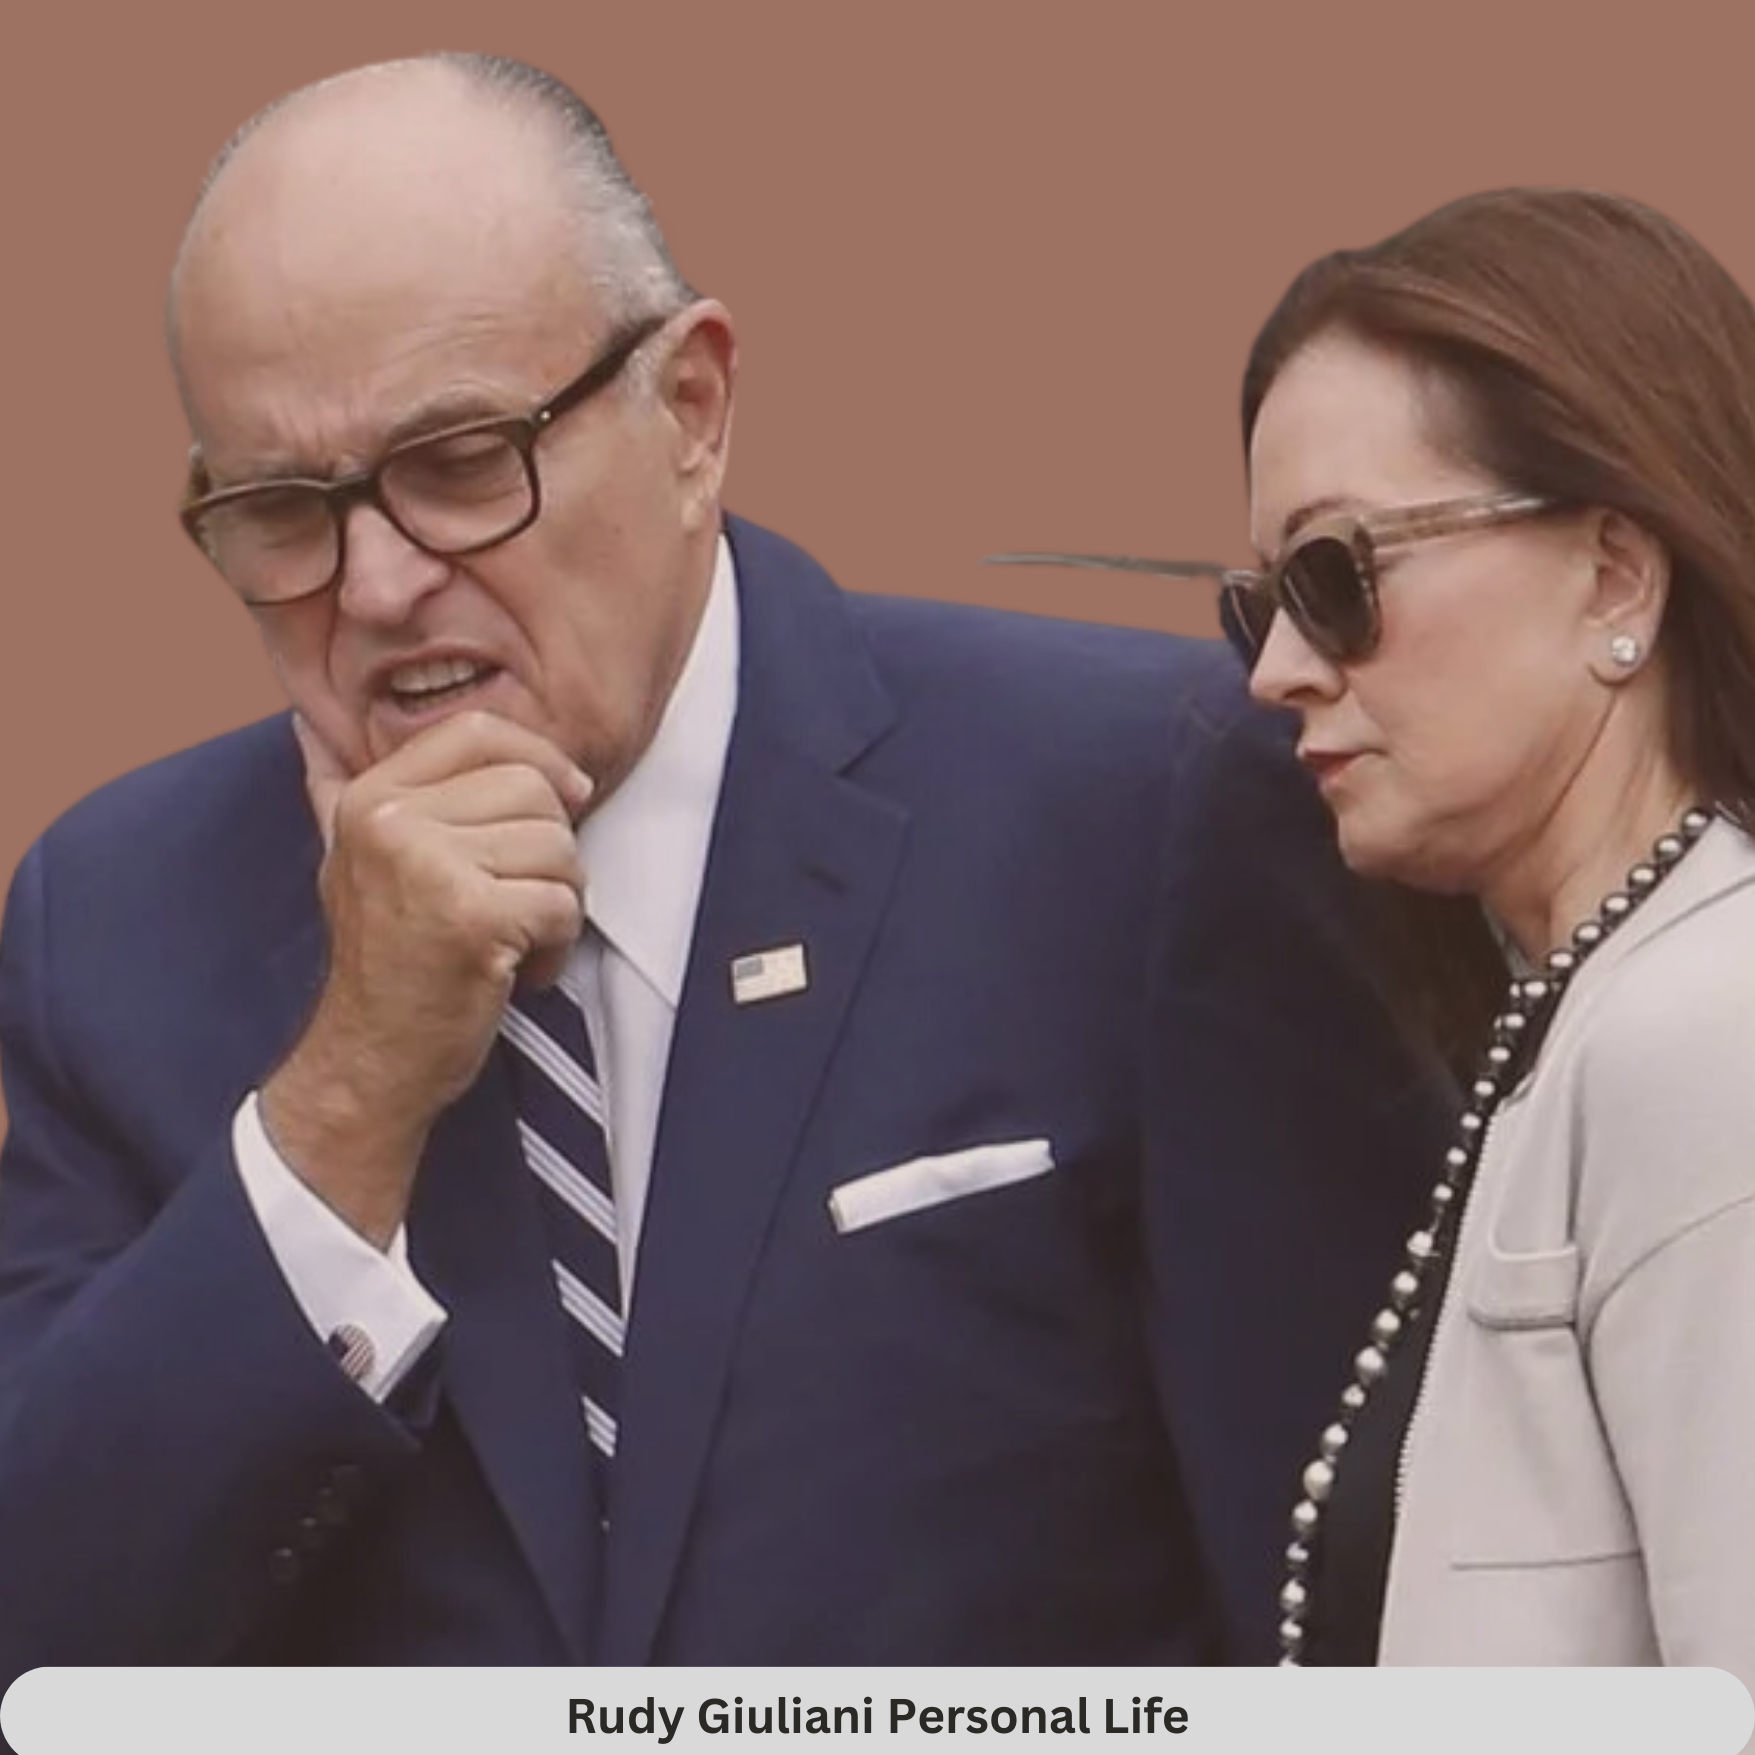 Rudi Giuliani's Personal Life